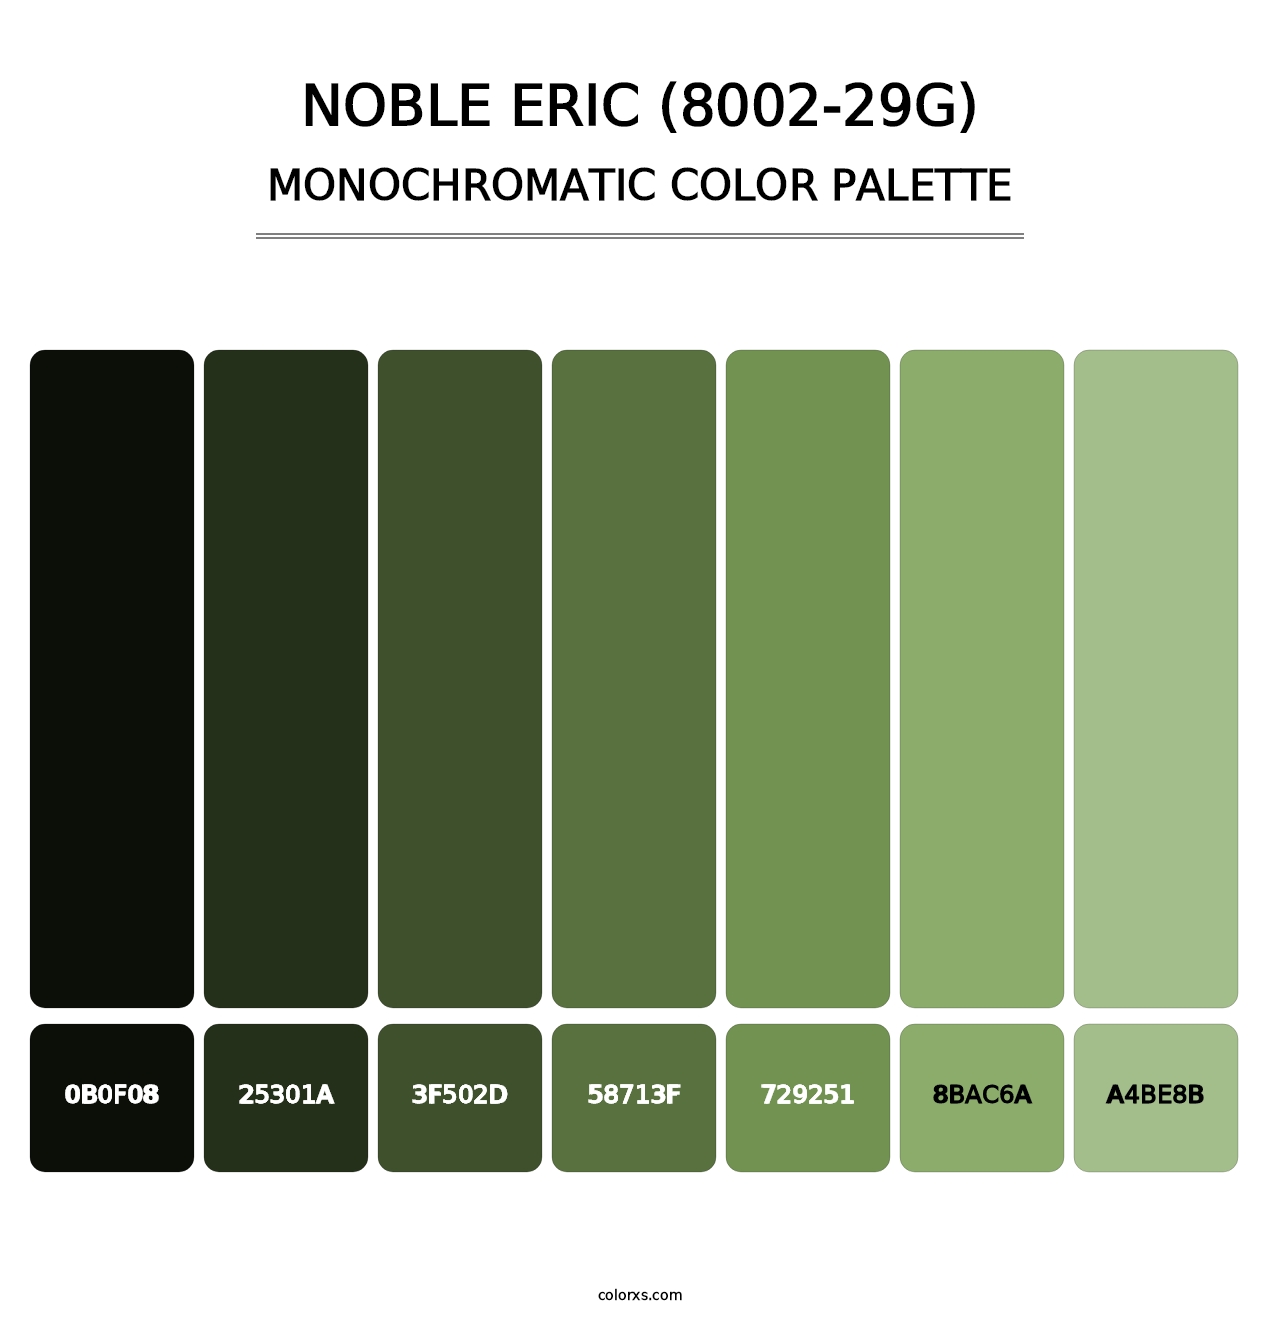 Noble Eric (8002-29G) - Monochromatic Color Palette